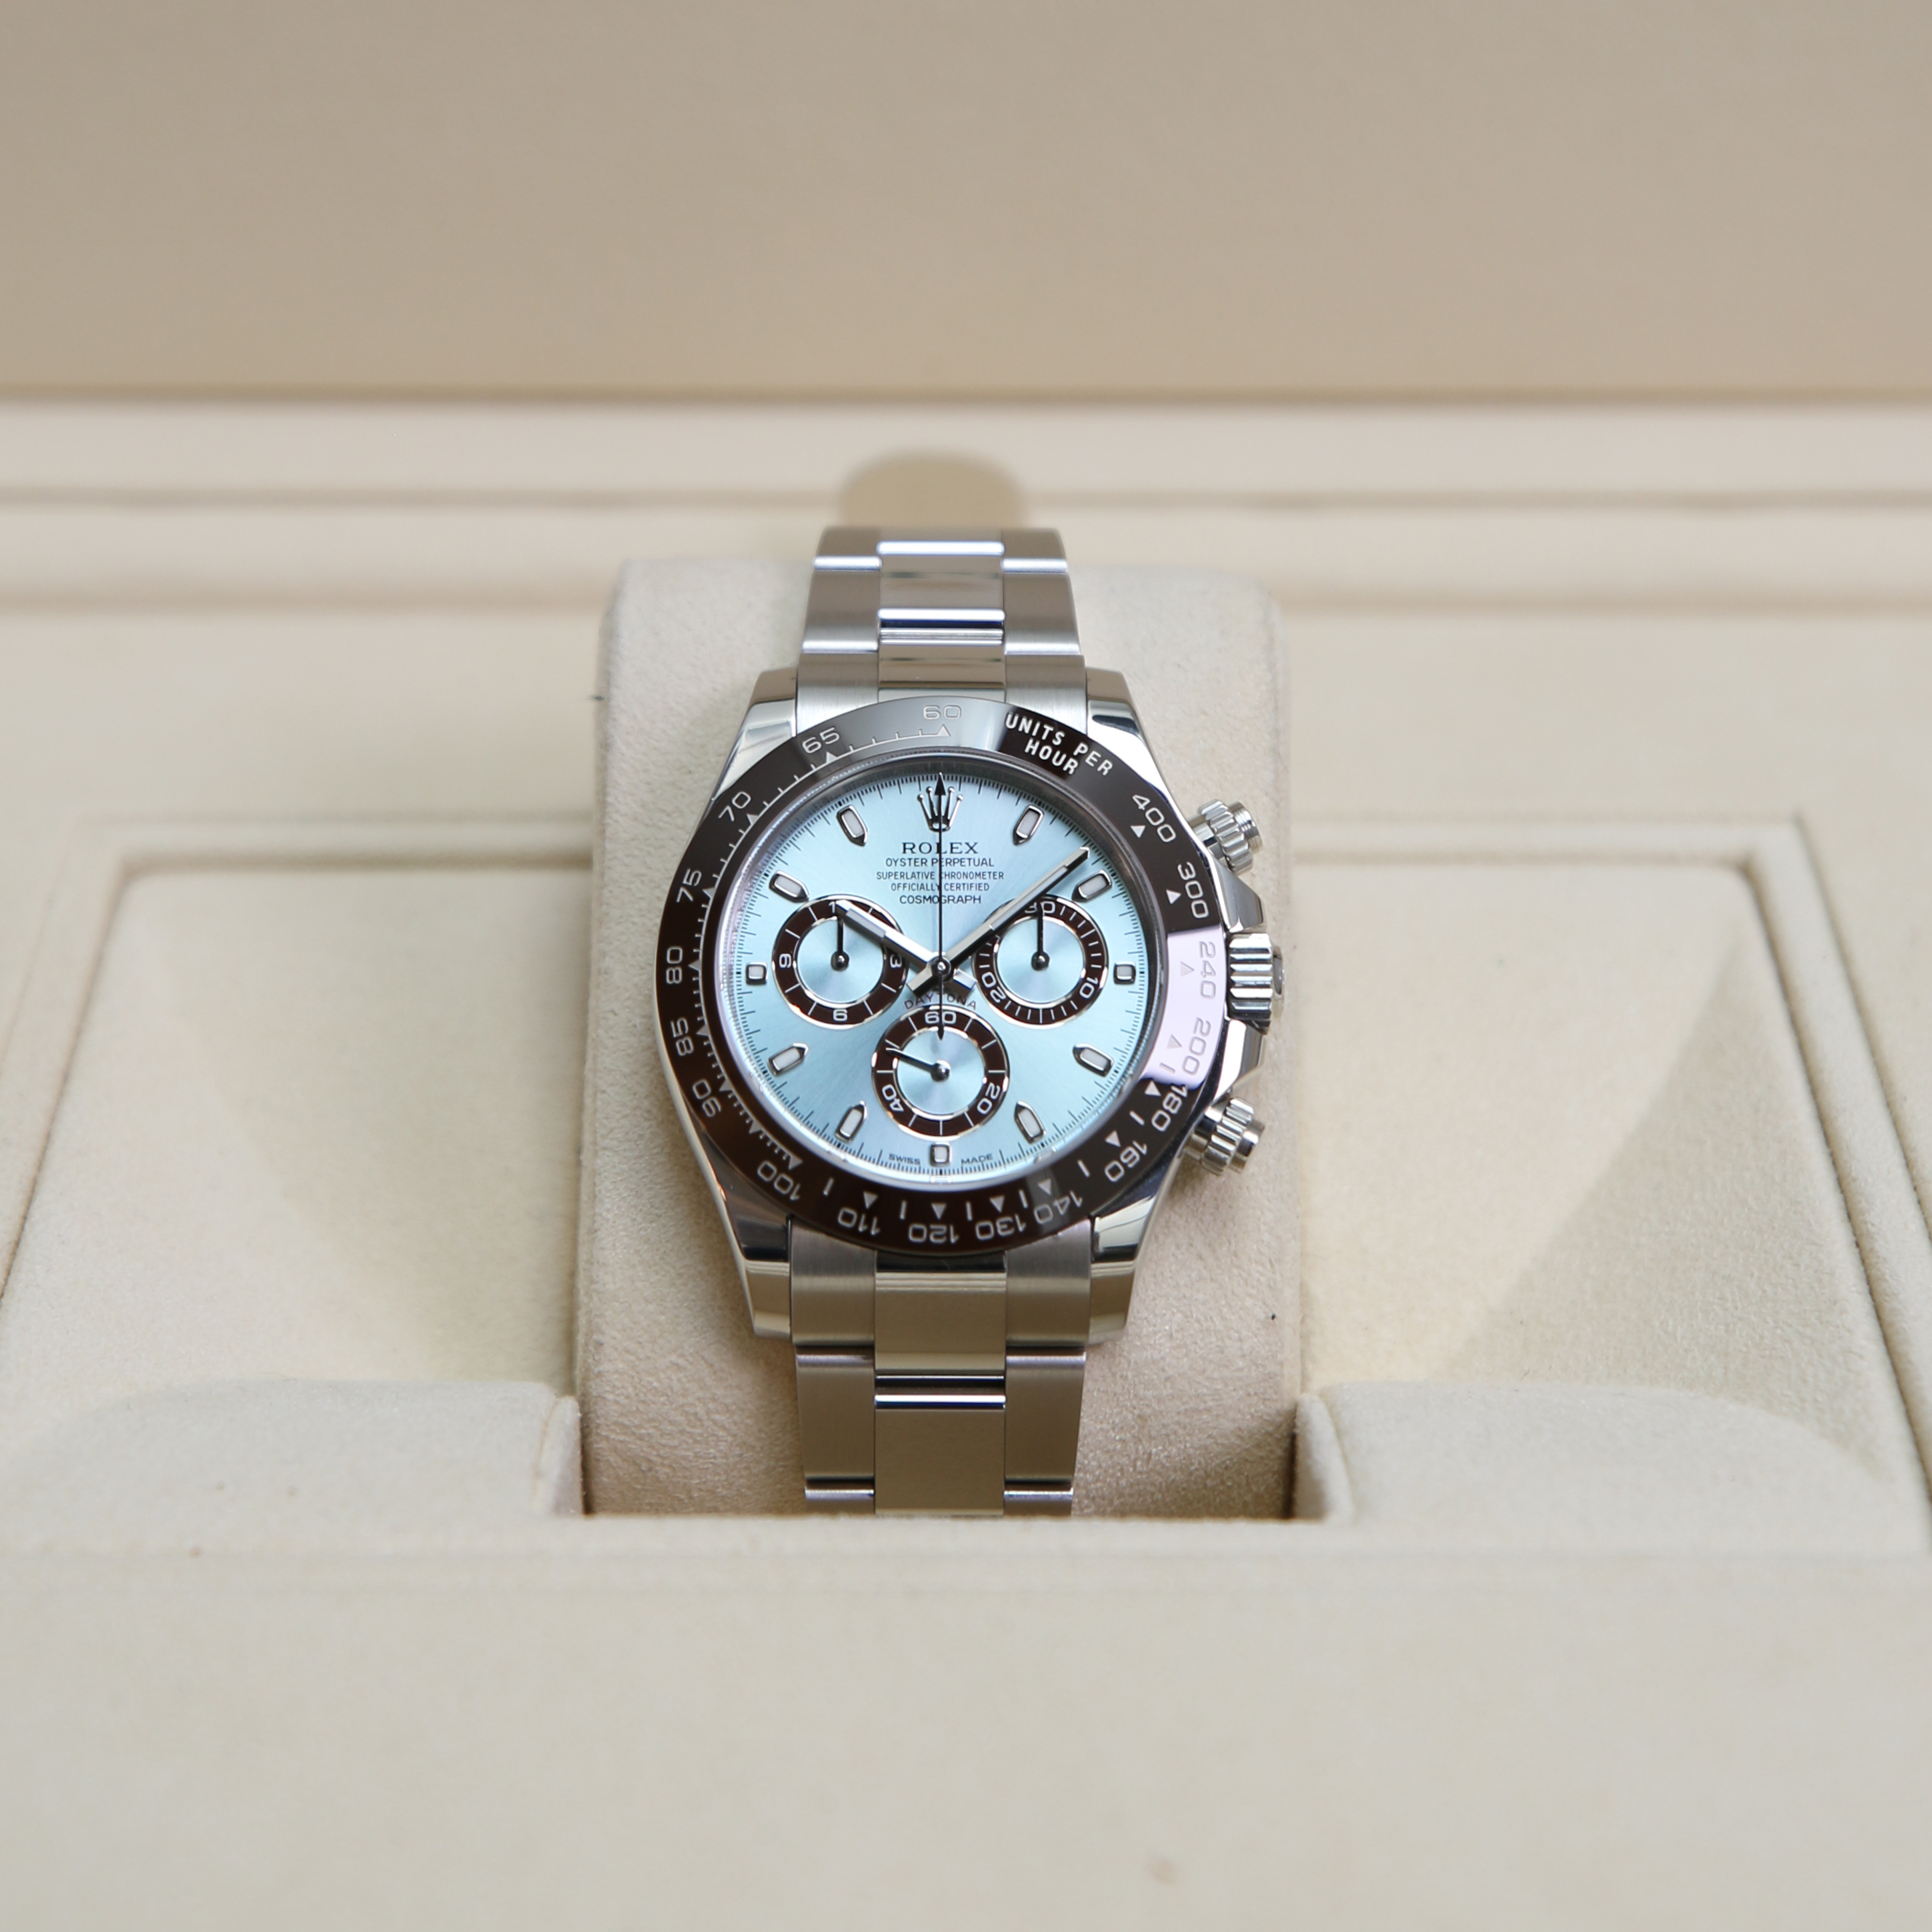 ris Algebra skjorte Daytona Platinum Ice Blue Dial - Rolex - Sold watches - Juwelier Burger